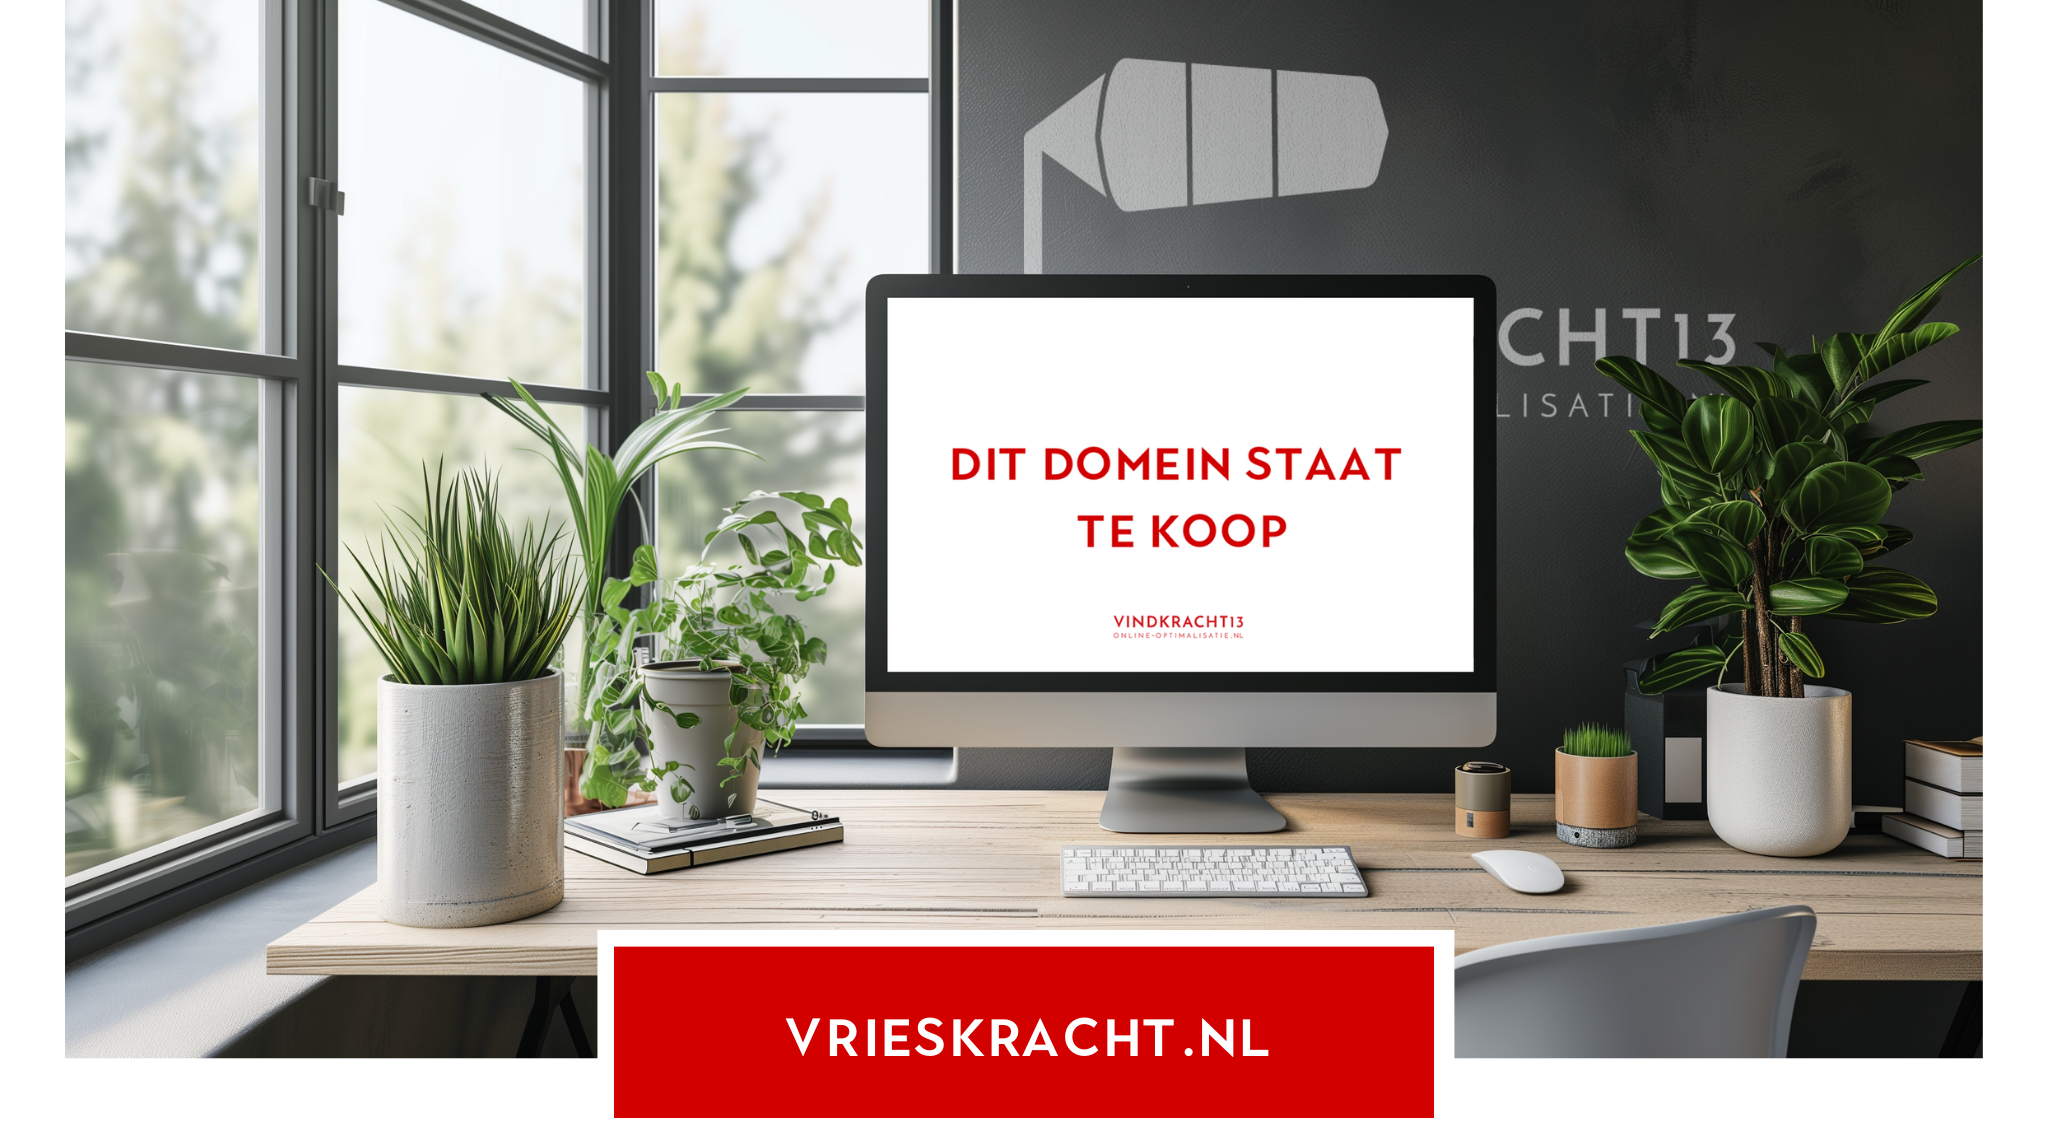 Domein vrieskracht.nl te koop